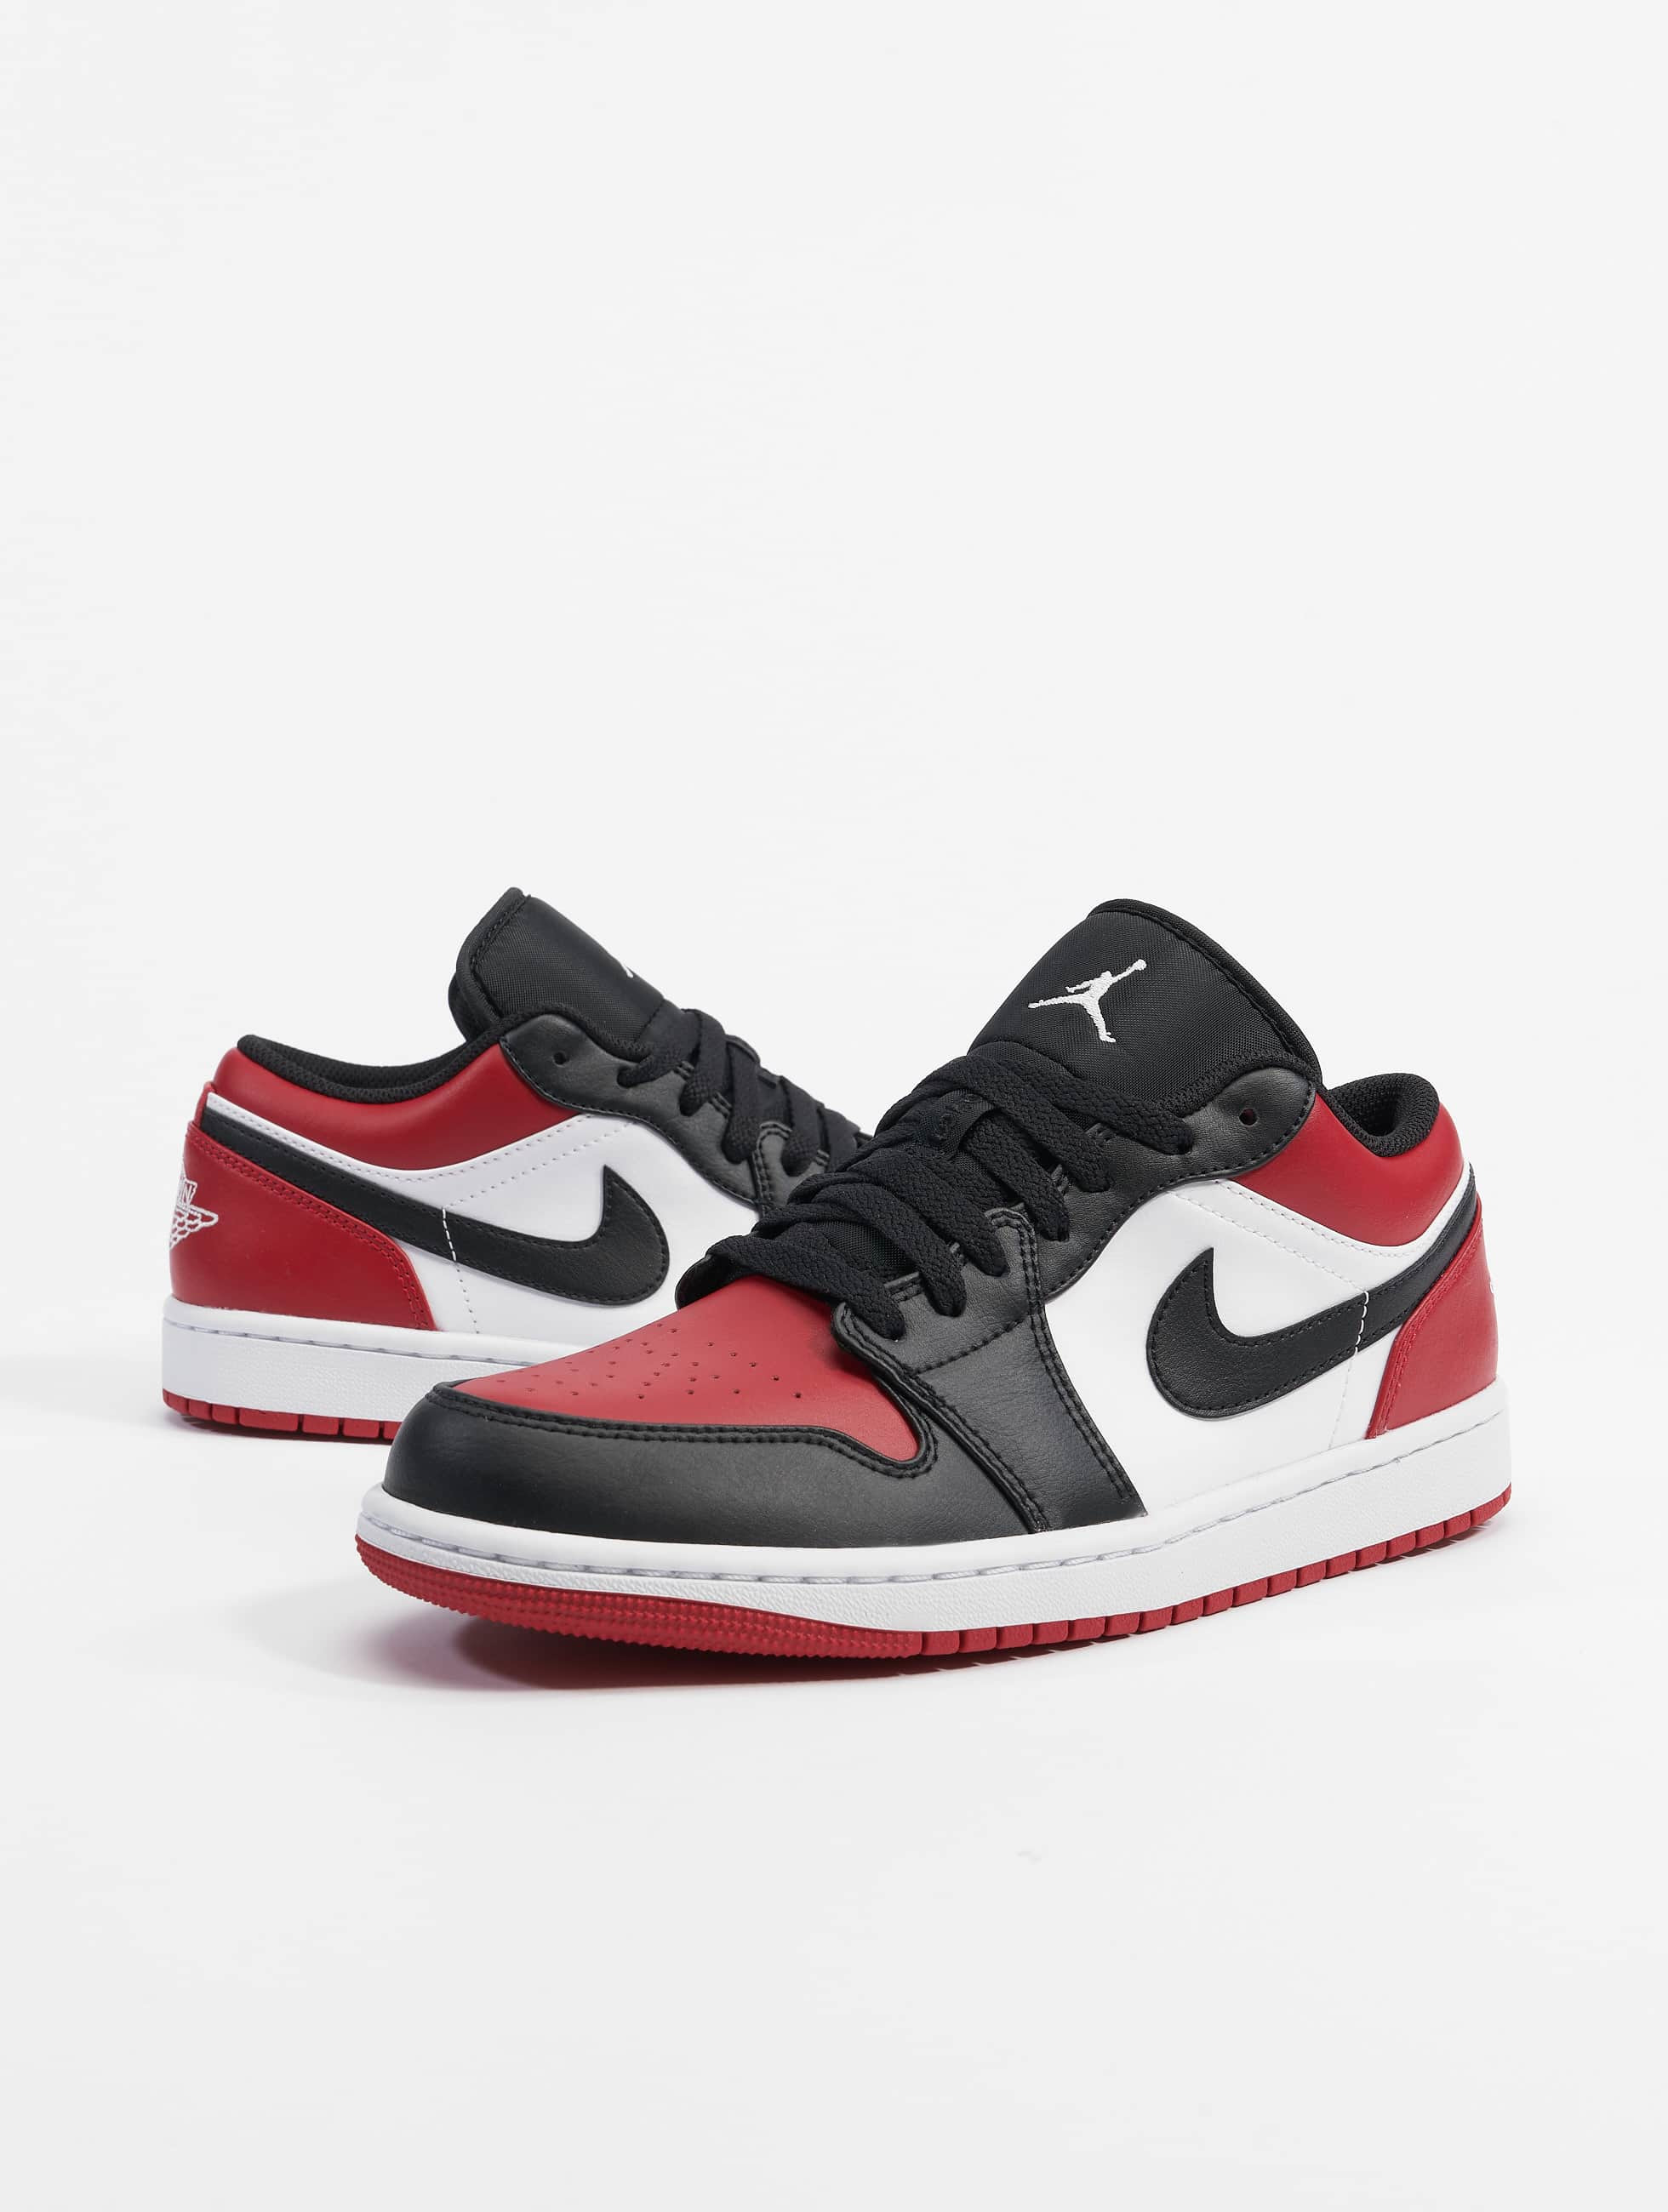 Reproduceren afstuderen Rimpels Jordan schoen / sneaker Air Jordan 1 Low in rood 898956